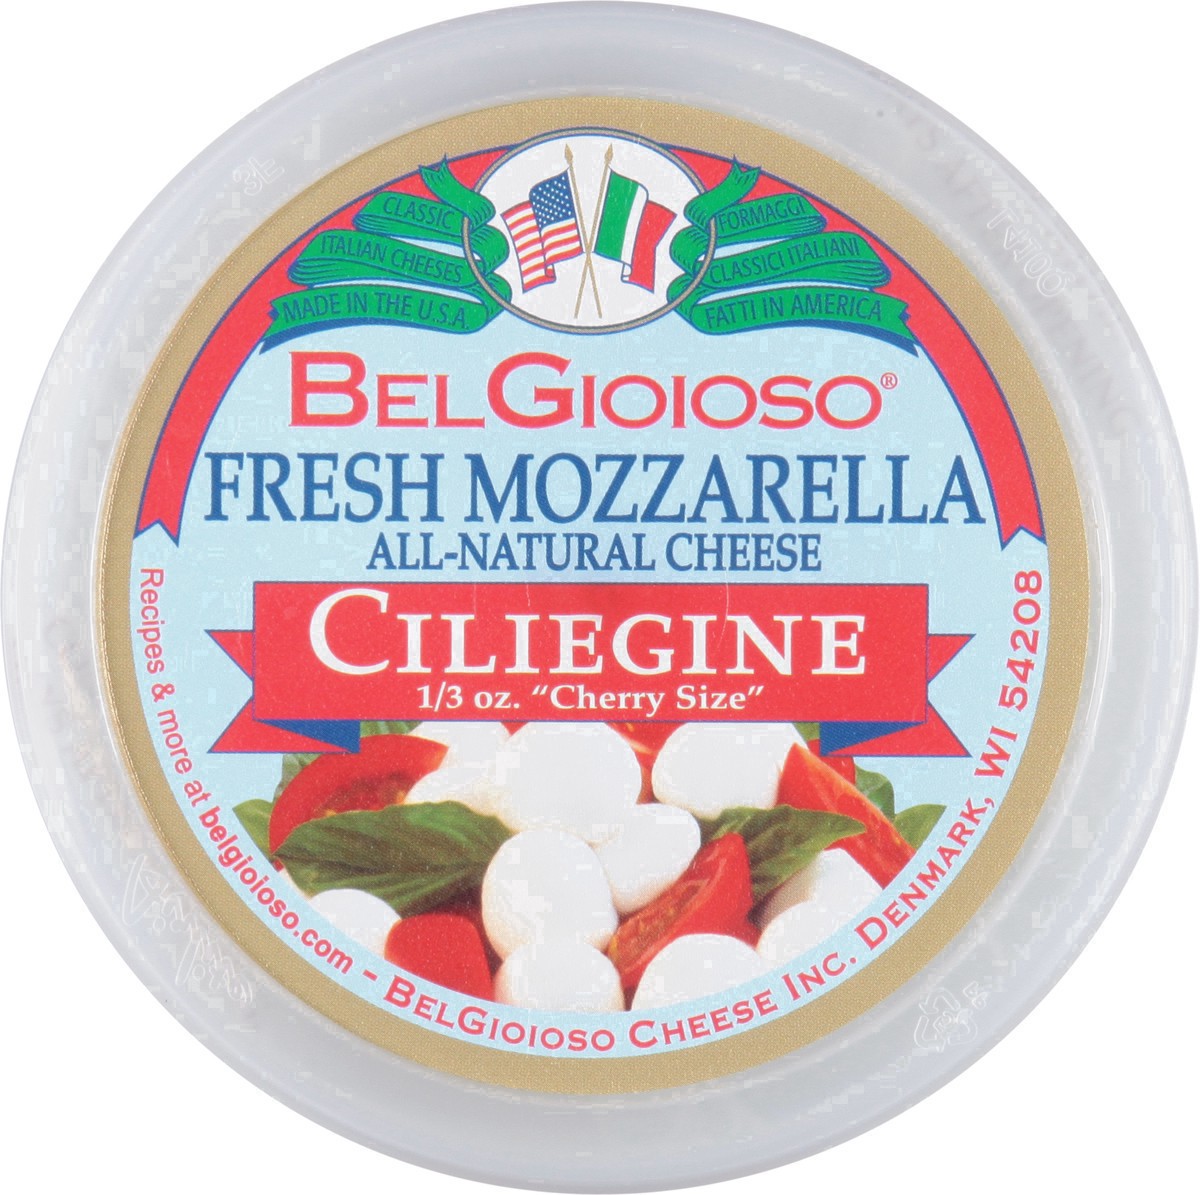 slide 15 of 51, BelGioioso Fresh Mozzarella Ciliegine, 8 oz